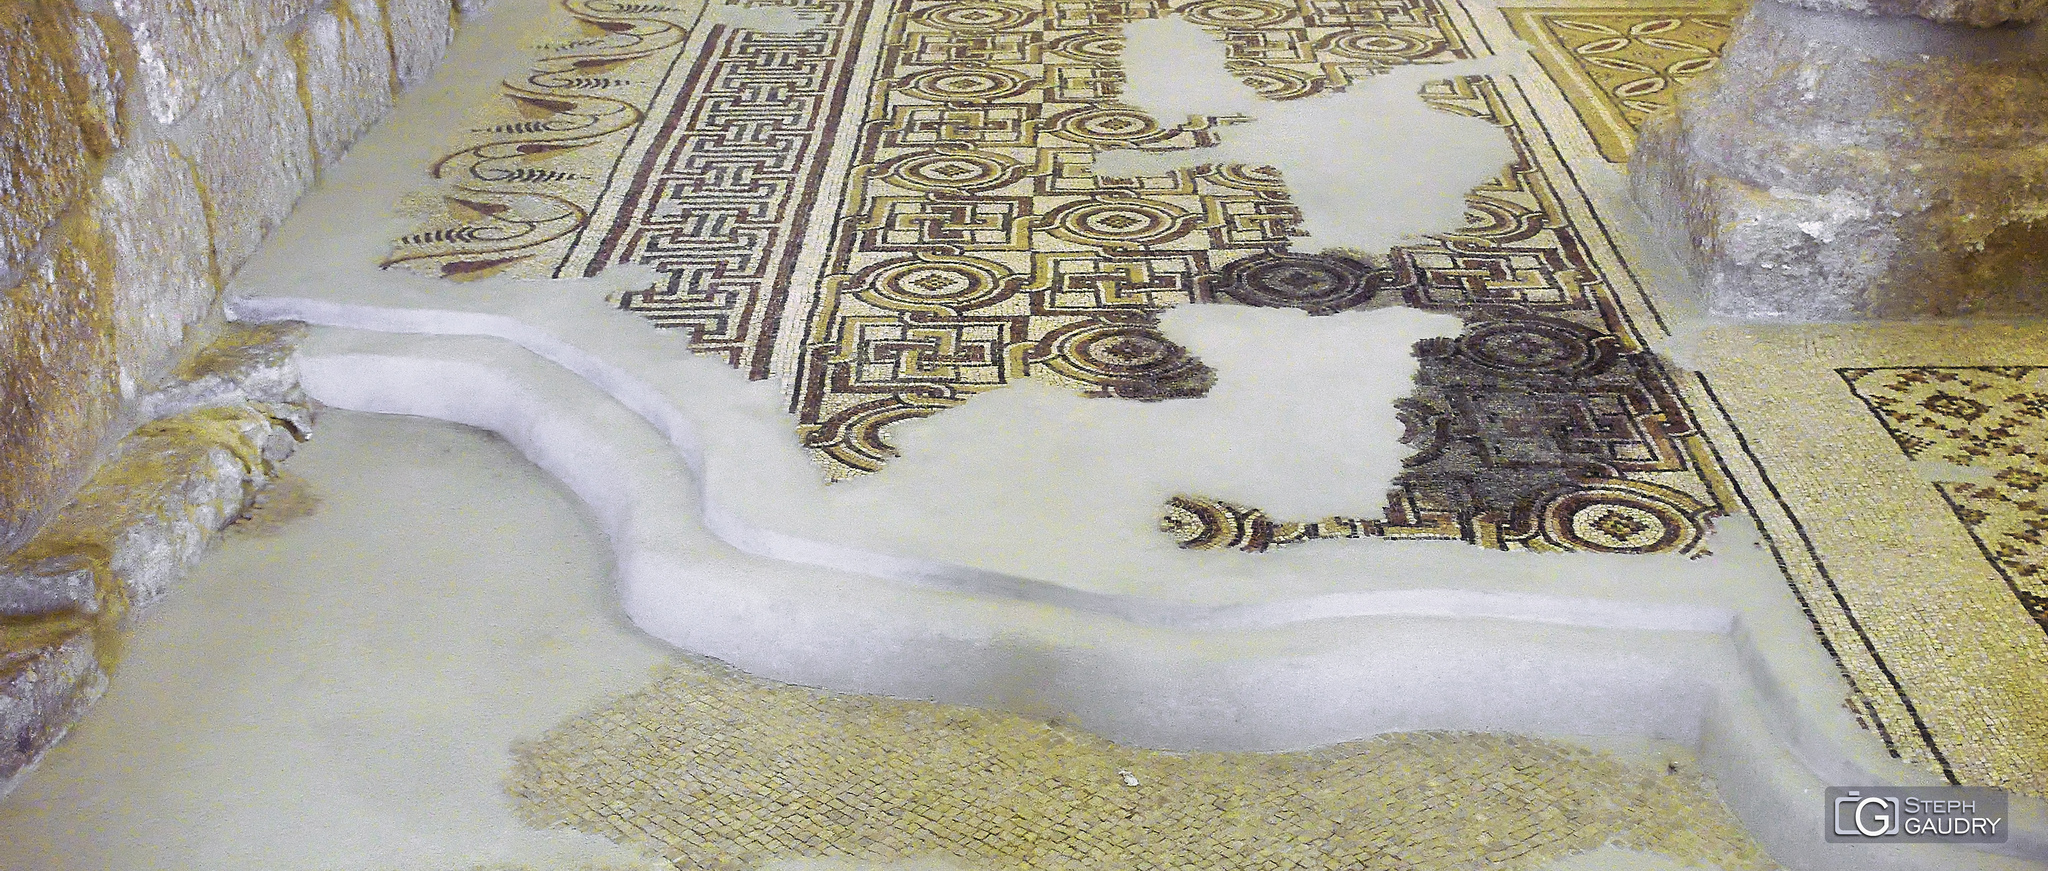 Couches de mosaïques de la basilique du mémorial de Moïse au Mont Nébo